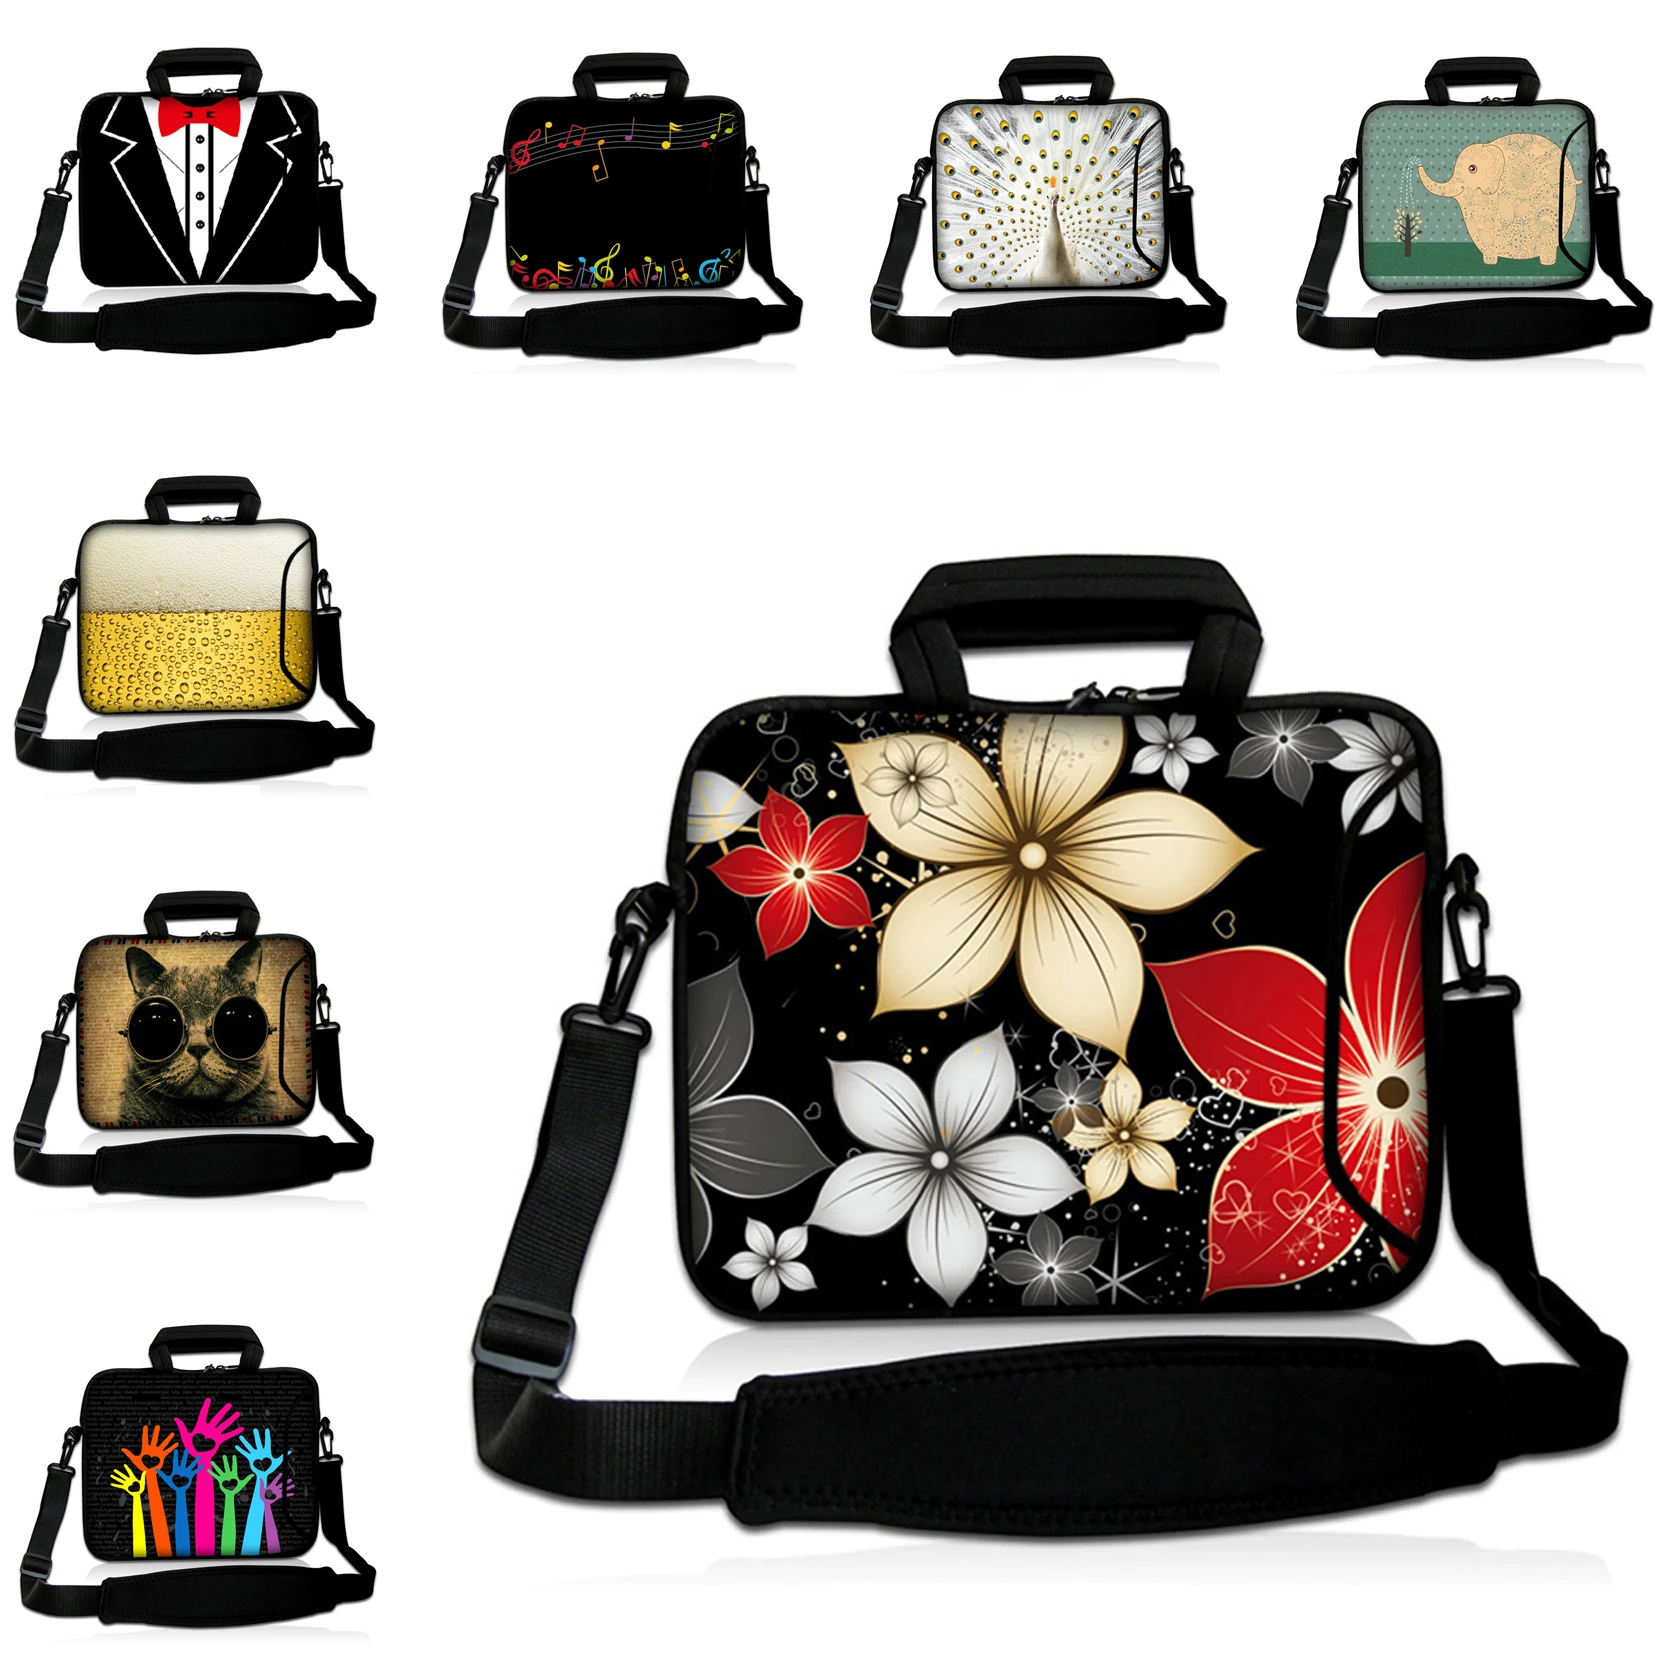 Ноутбук 13 дюймов из неопрена 14 12 10 17 15 дюймов Портфели сумку для ноутбука MacBook Pro HP Envy стильные модные женские сумки